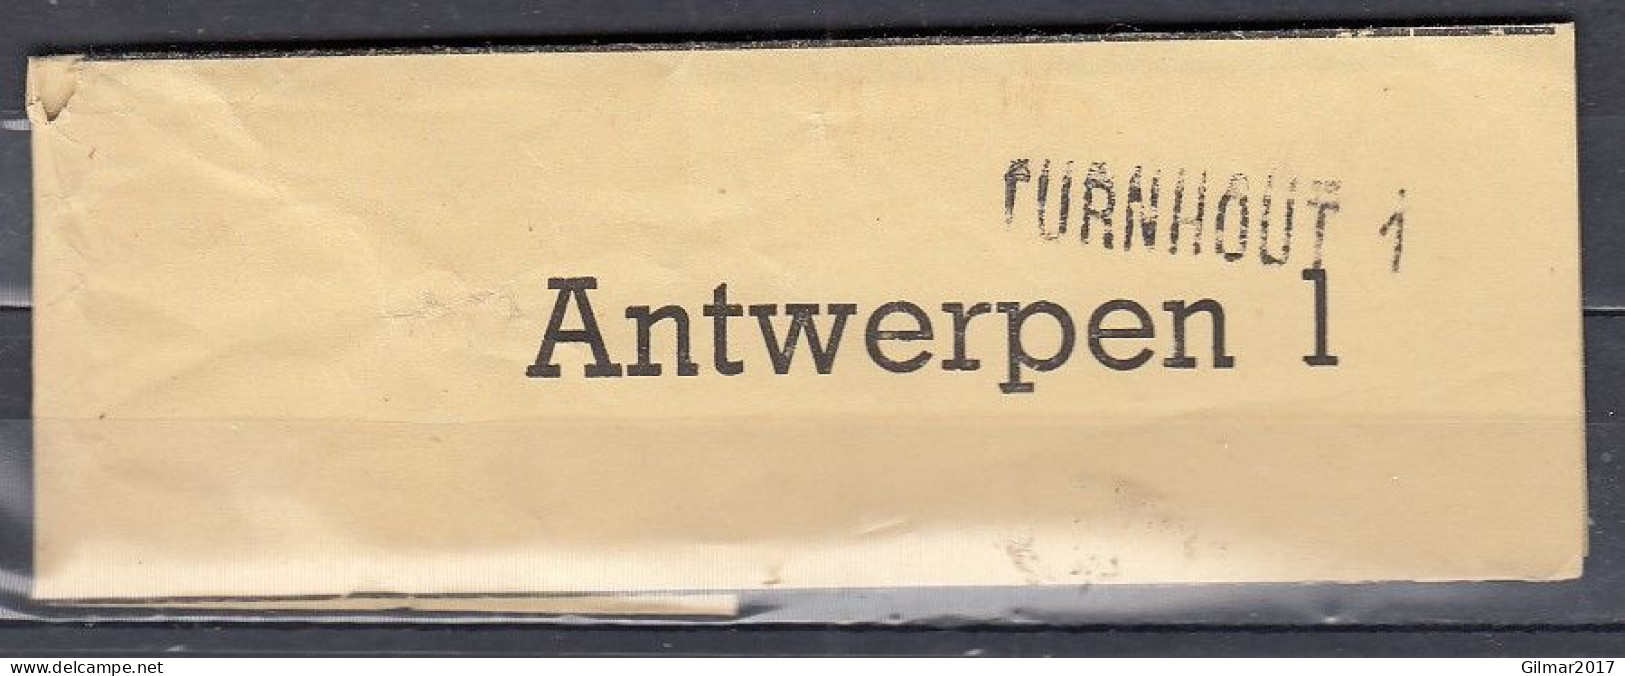 Fragment Van Antwerpen 1 Met Langstempel Turnhout 1 - Langstempel